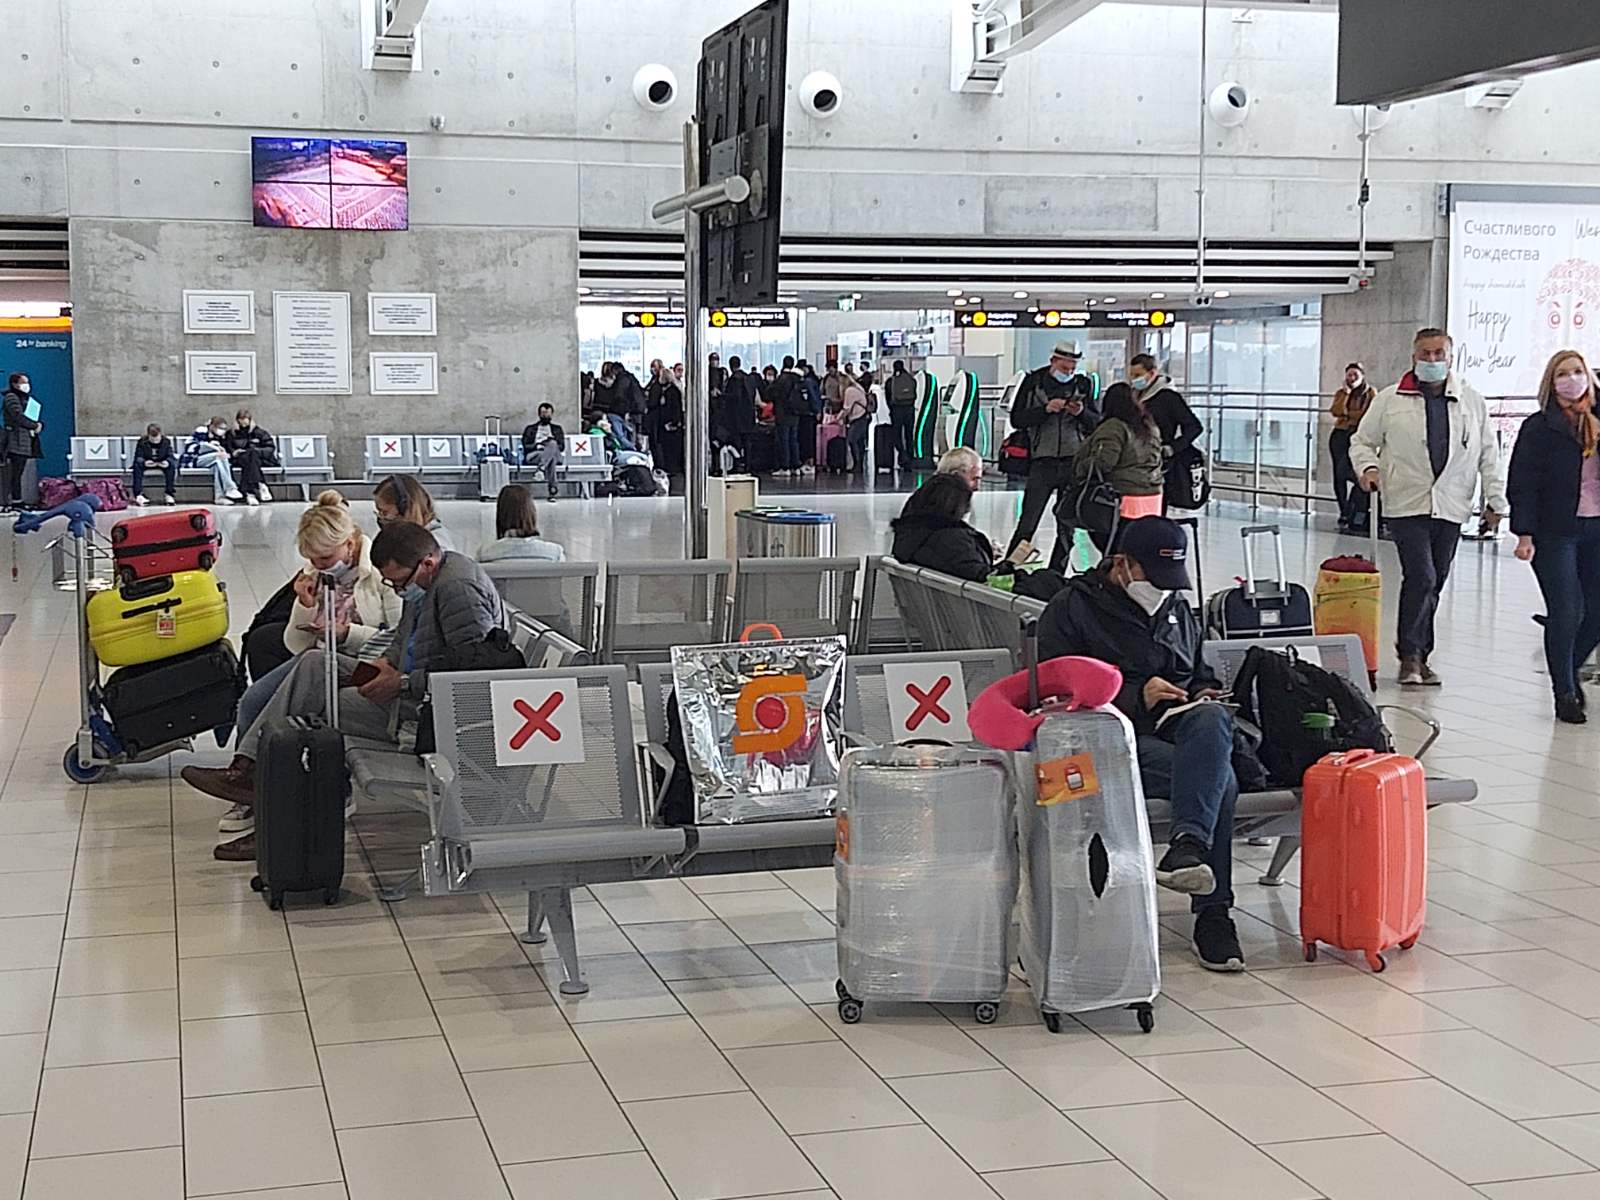 Σταμάτησαν να δουλεύουν οι ιμάντες στις αίθουσες αναχωρήσεων του Αεροδρομίου Λάρνακας (φώτο)